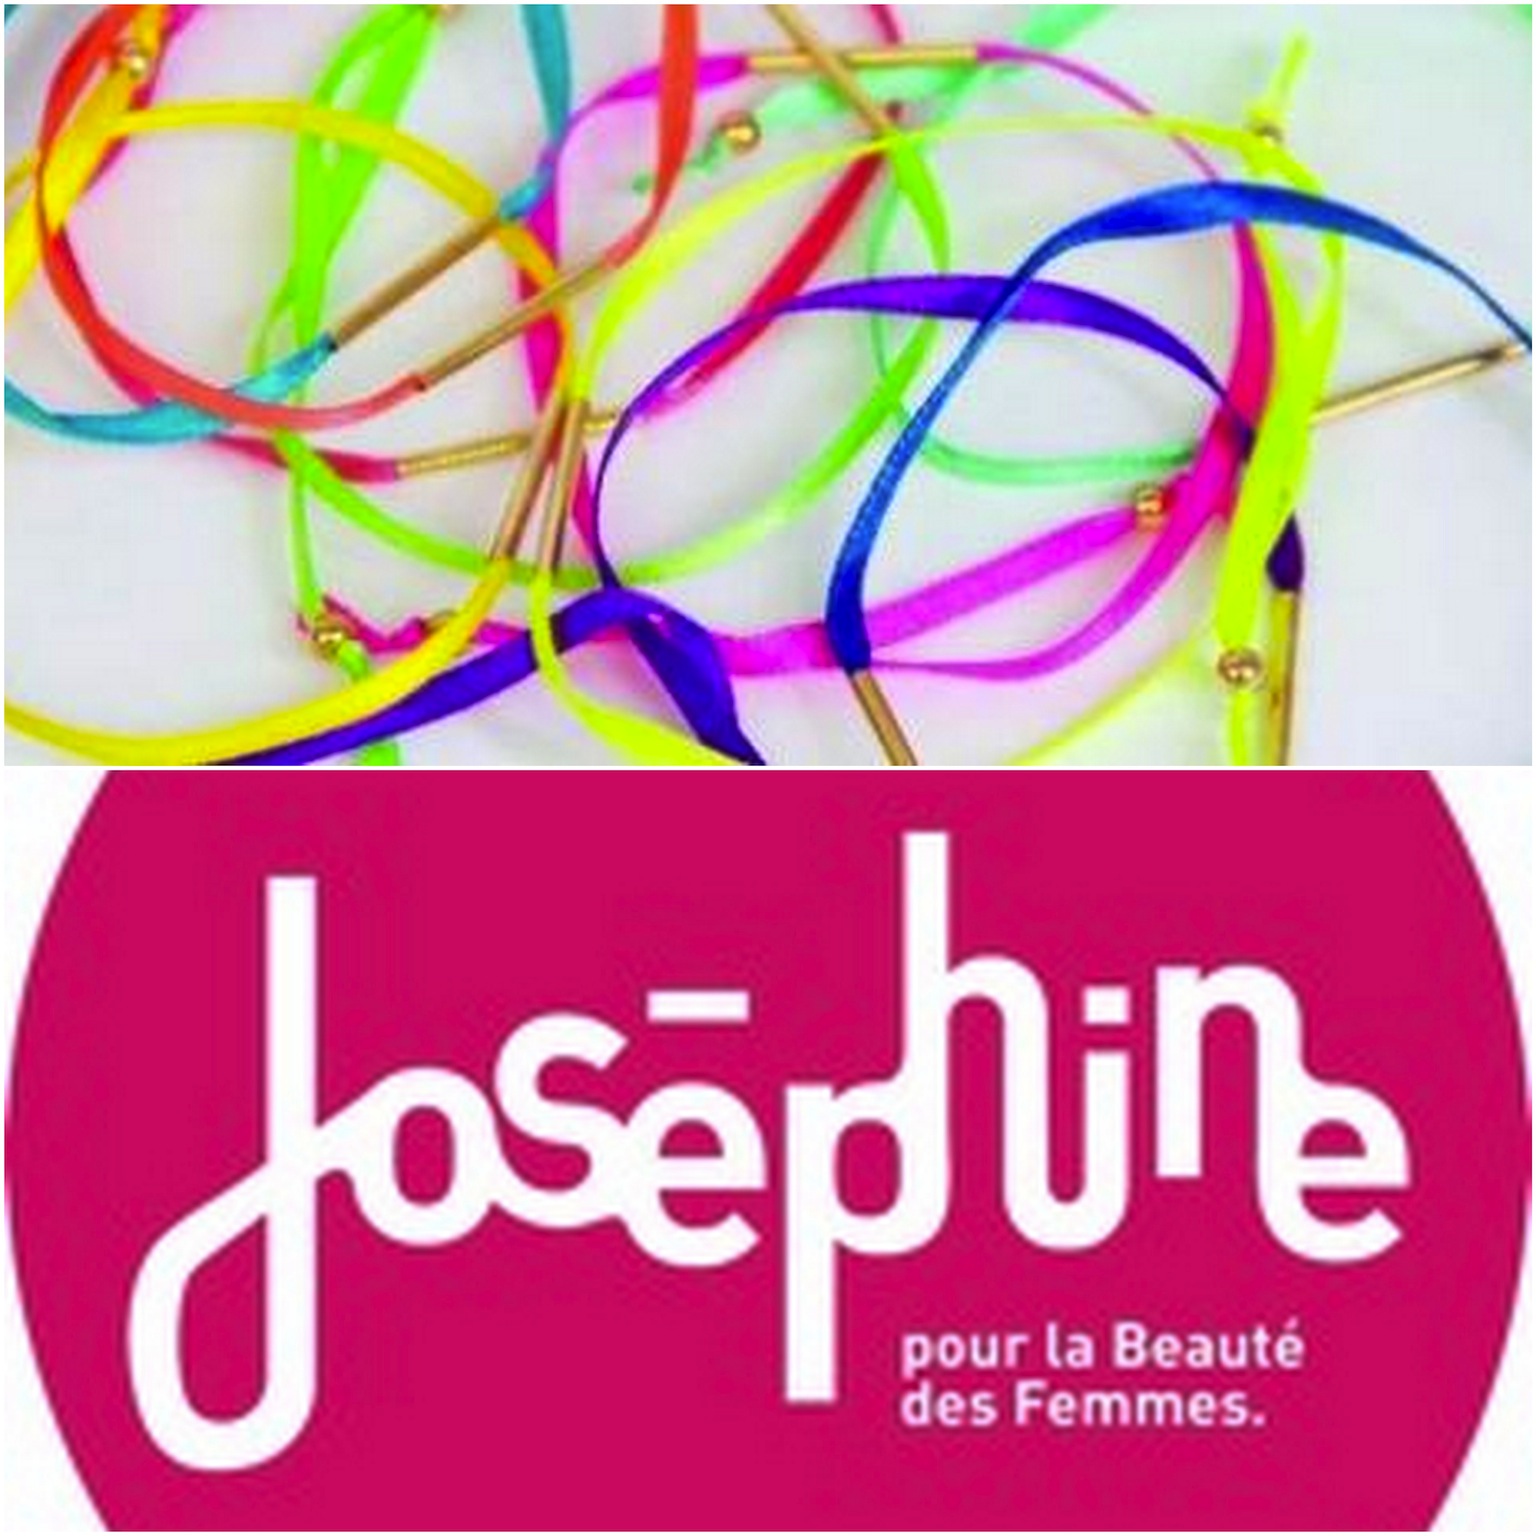 joséphine